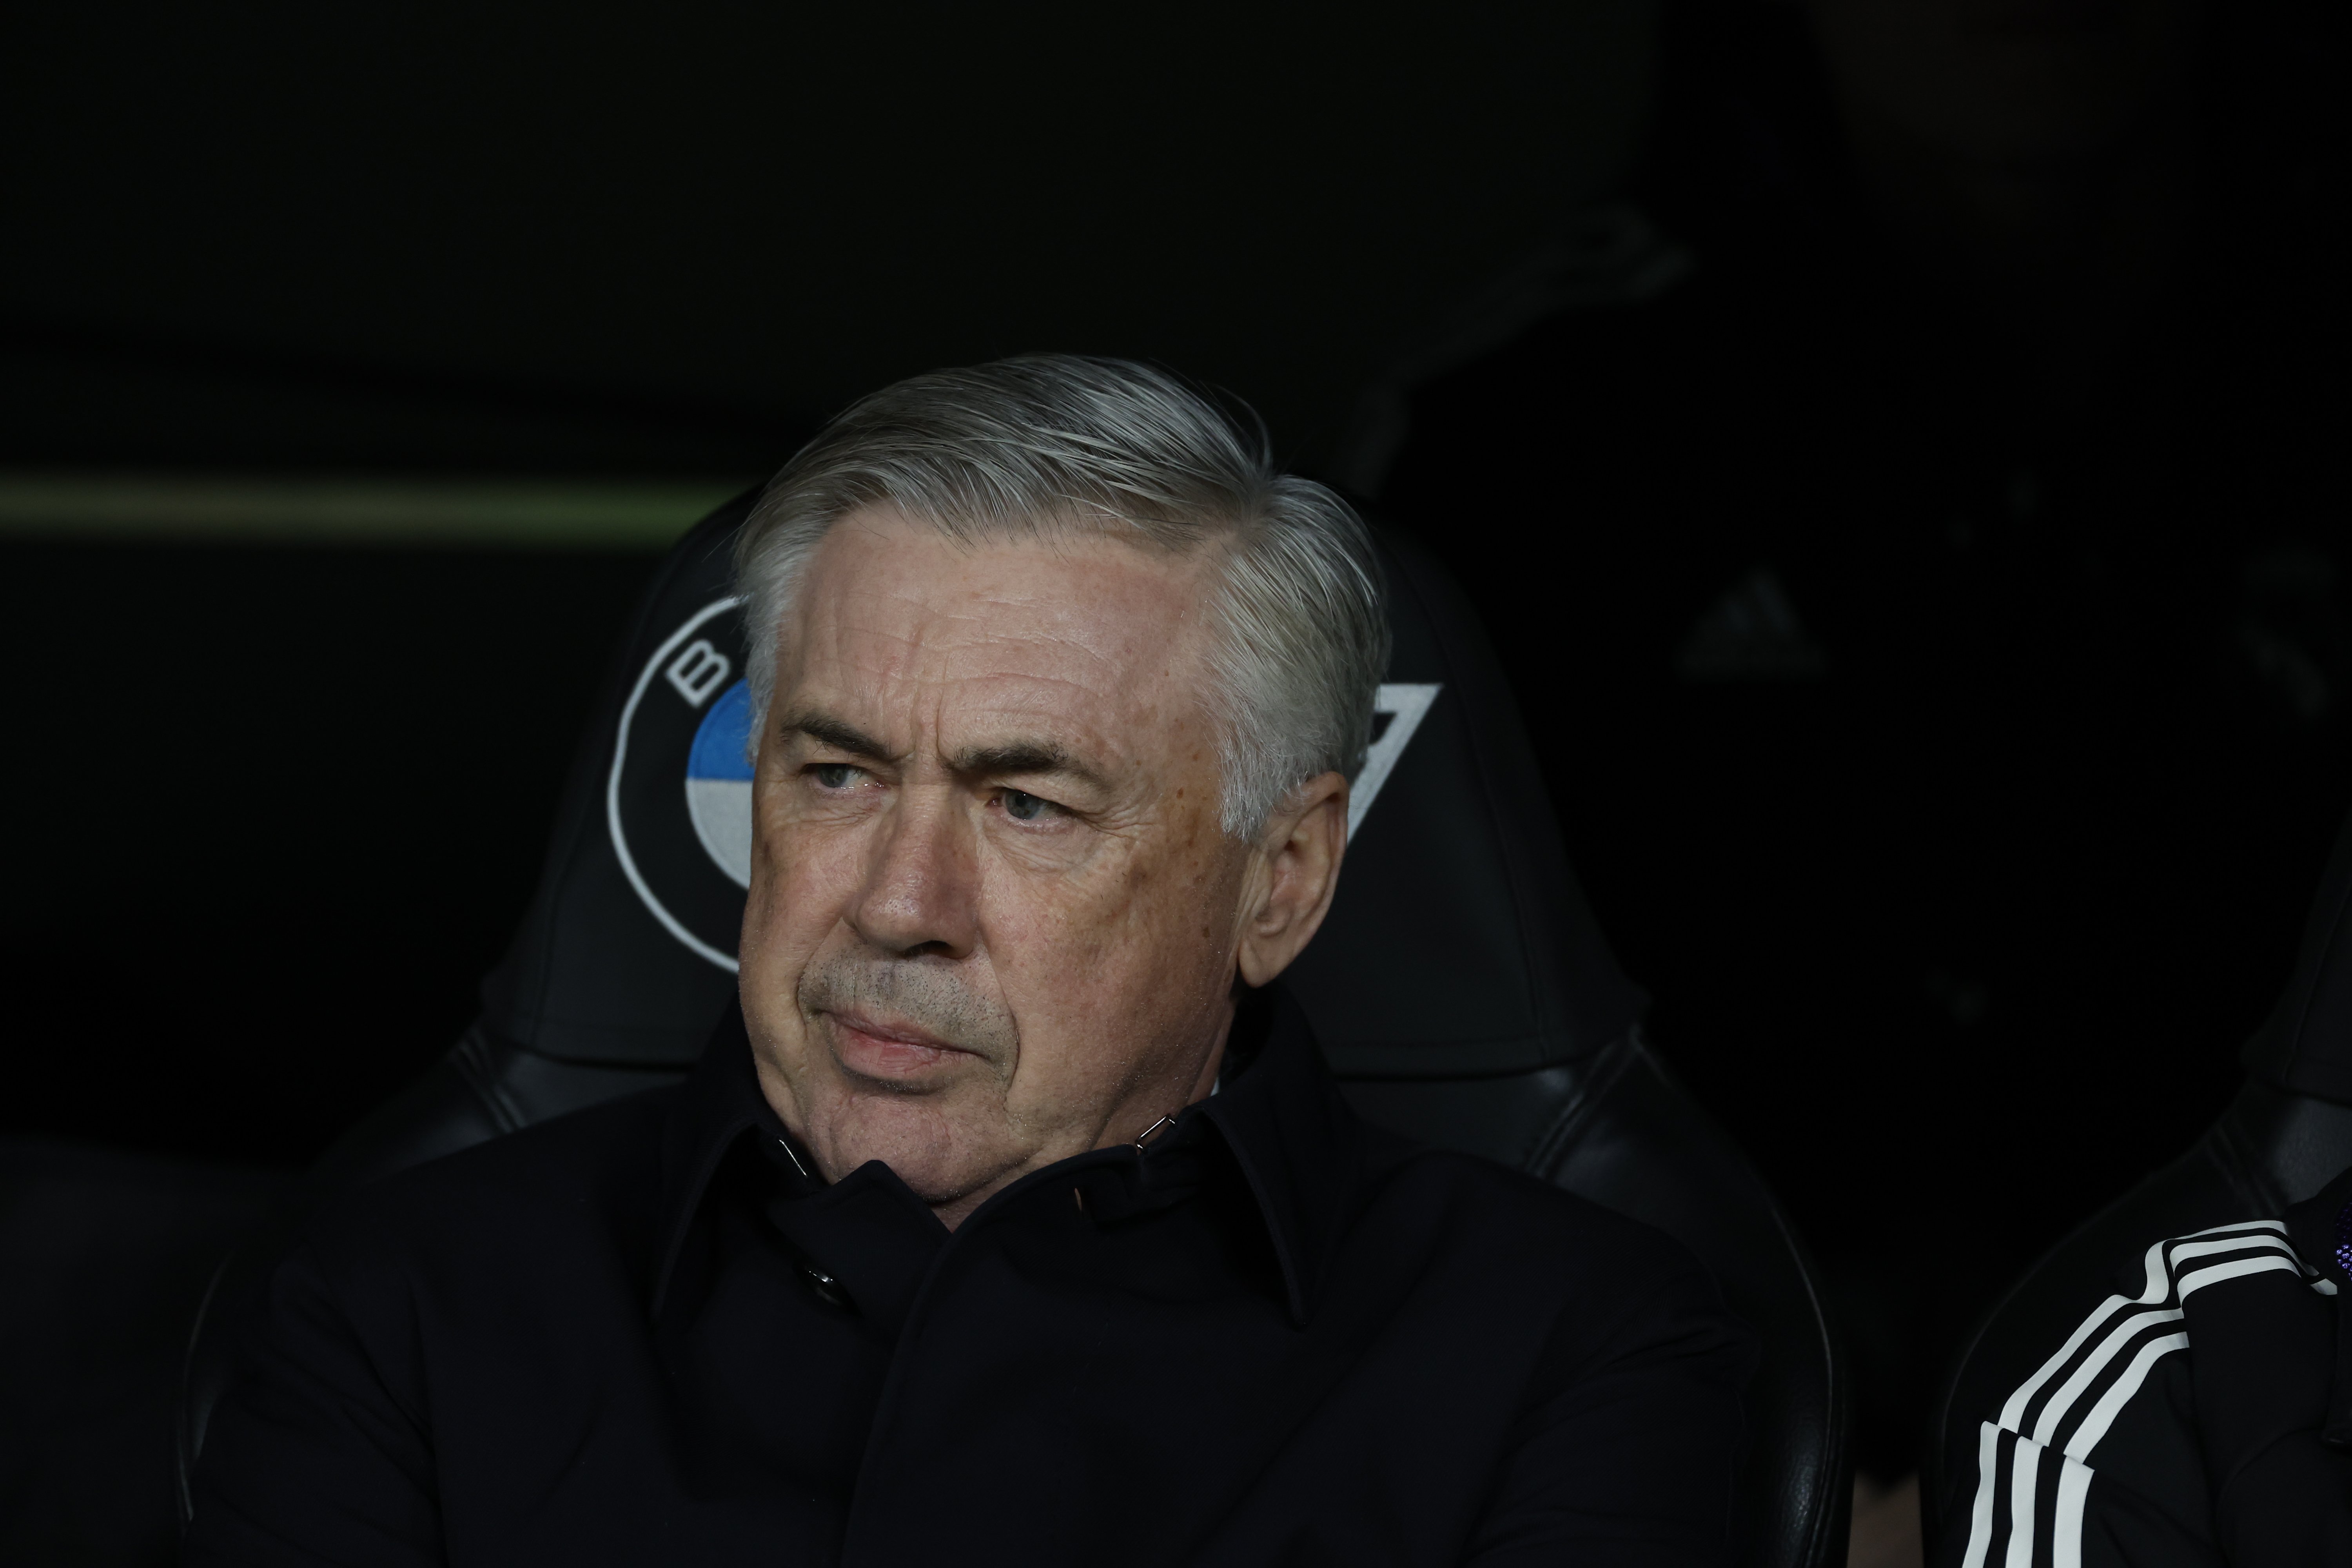 Gandul i mal professional: el problema que Ancelotti té ficat al vestidor del Reial Madrid; no es parlen